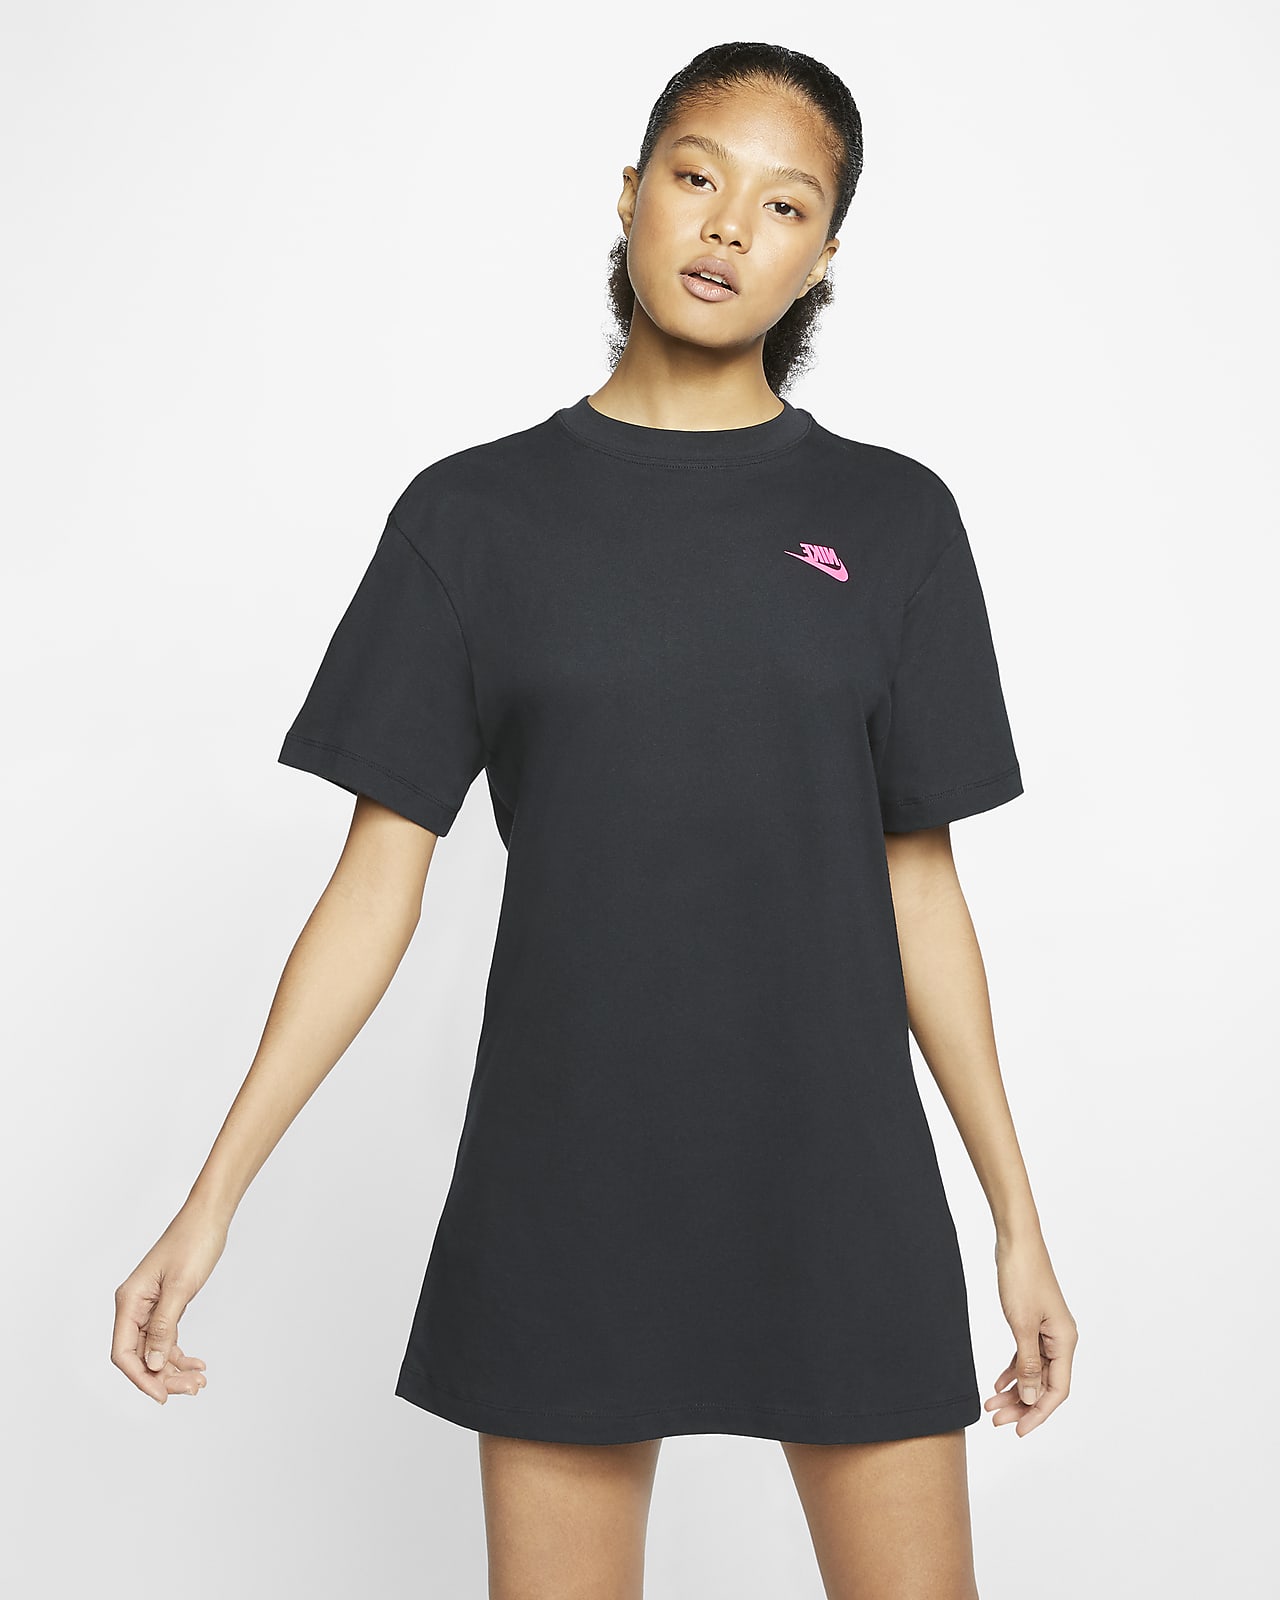 Nike Sportswear Women's T-Shirt Dress 